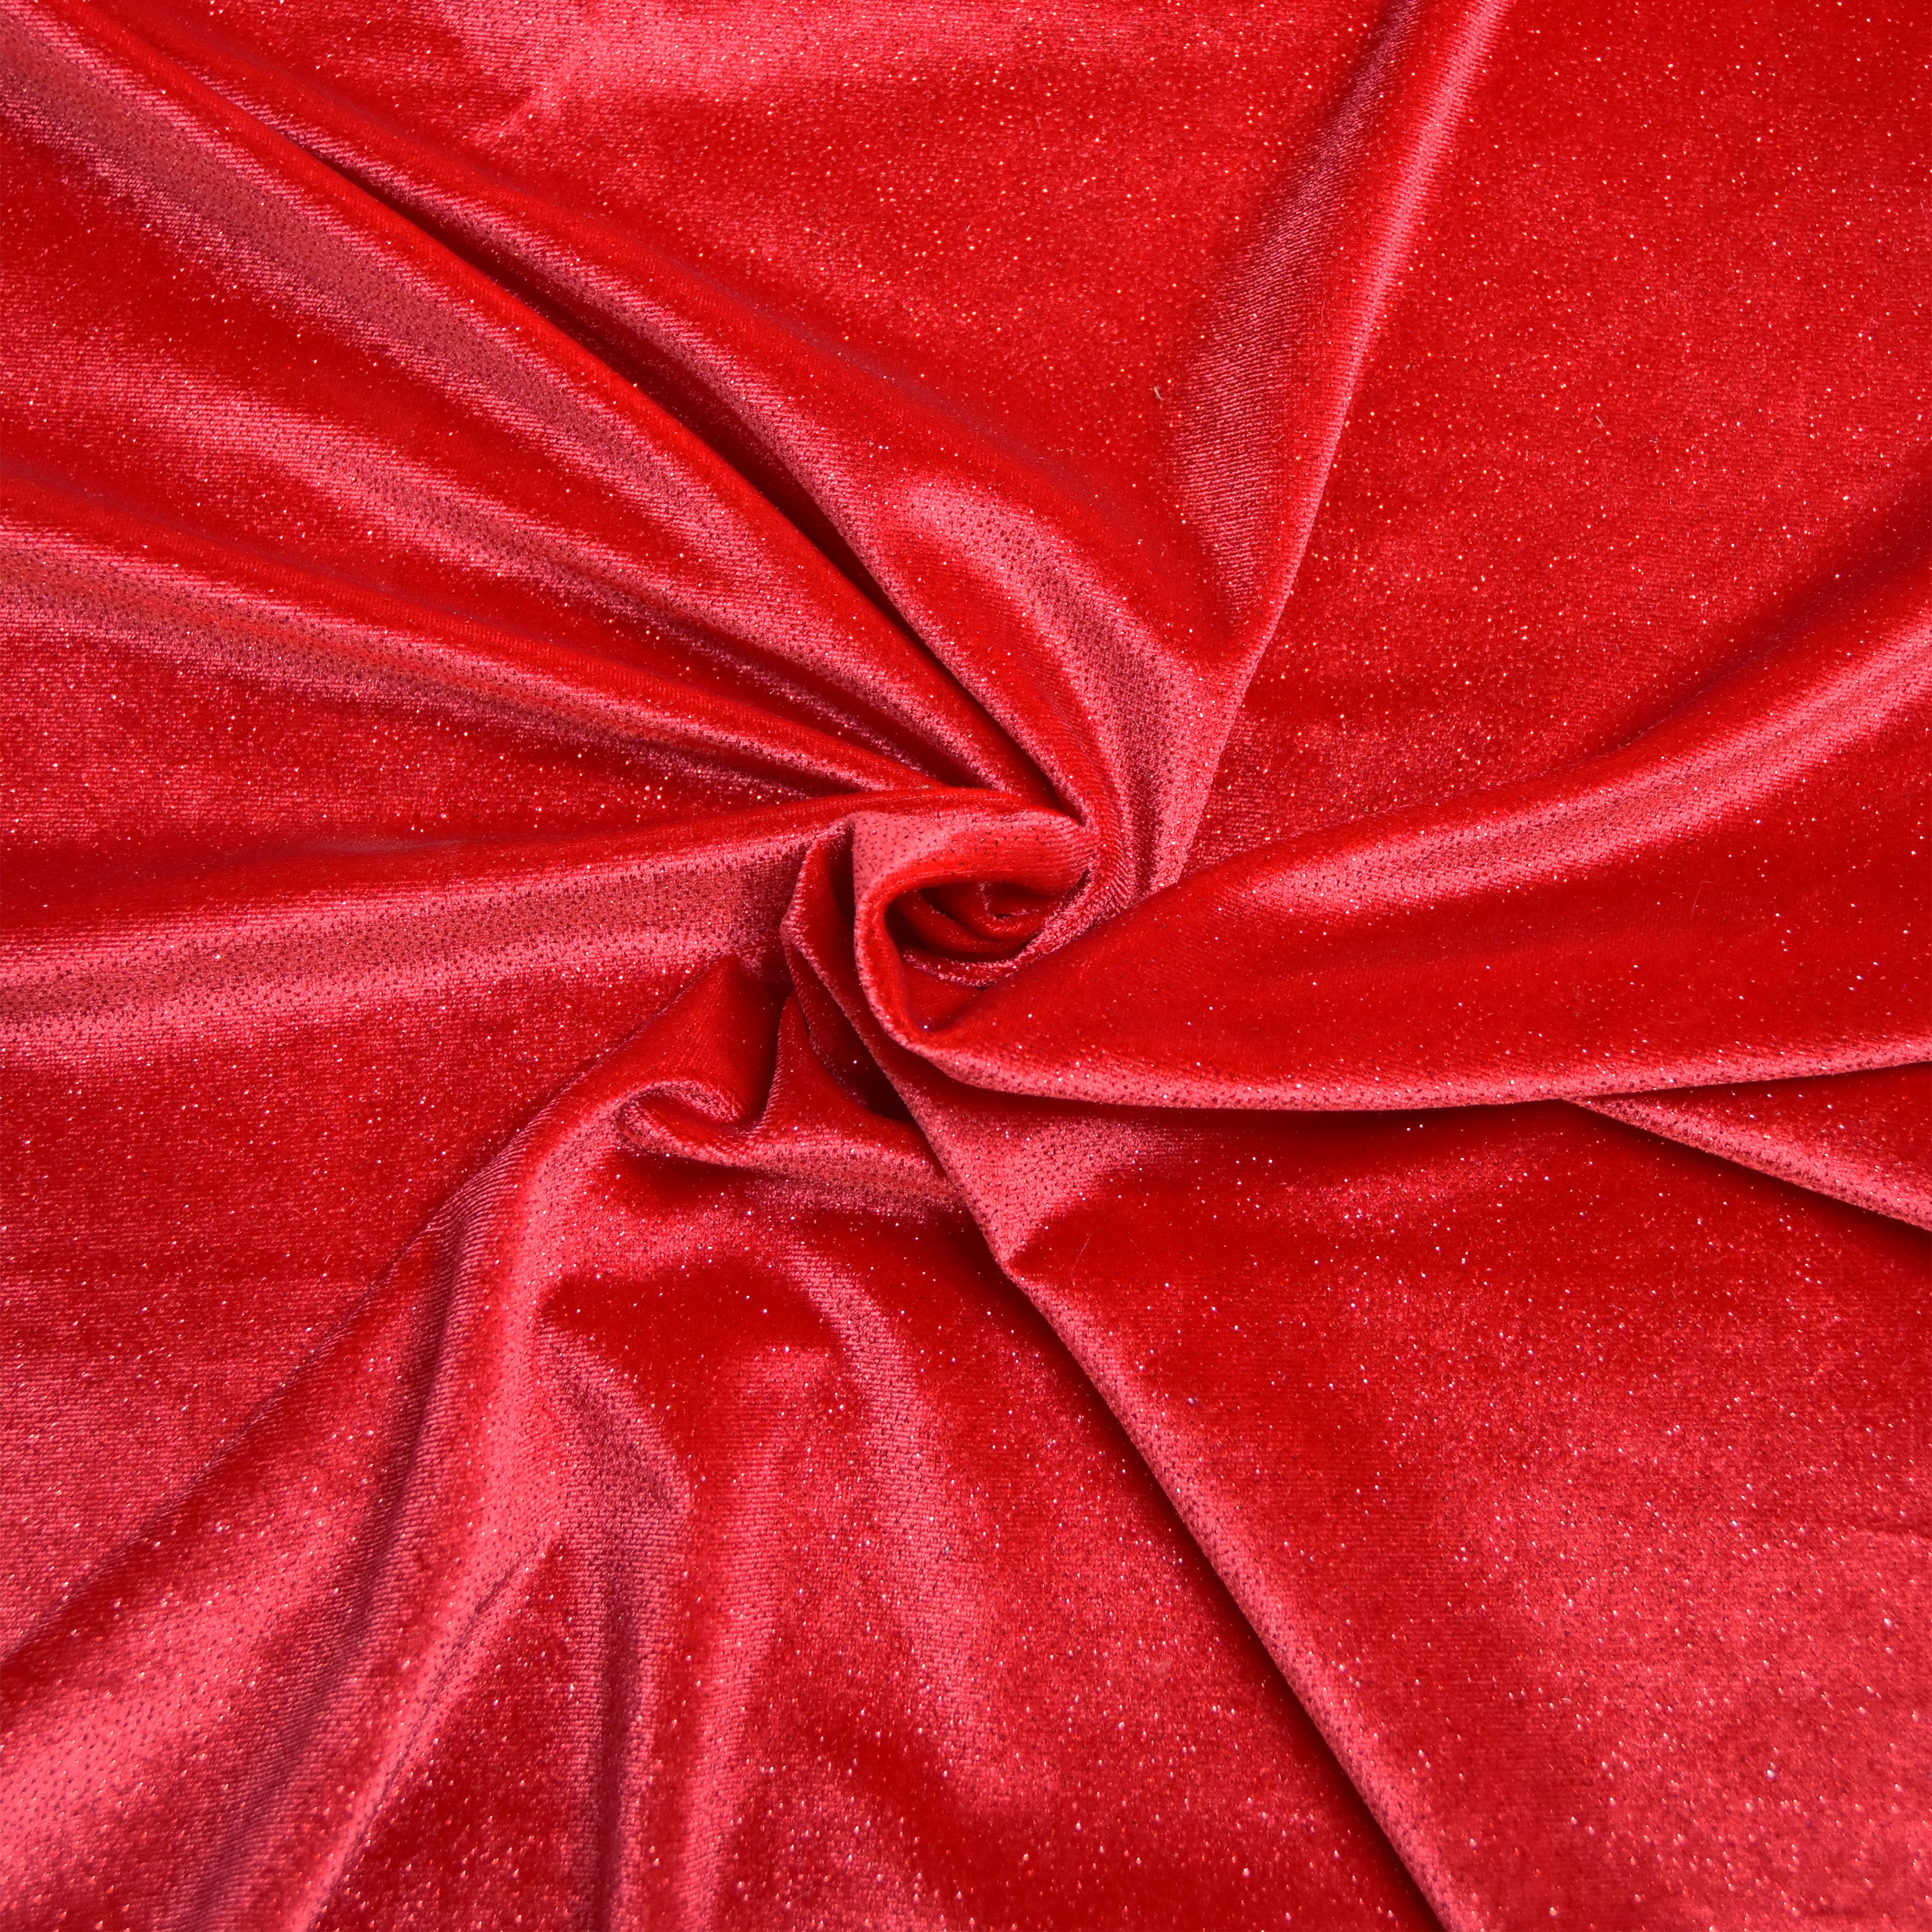 Feldman Red Sparkle Stretch Velvet Fabric